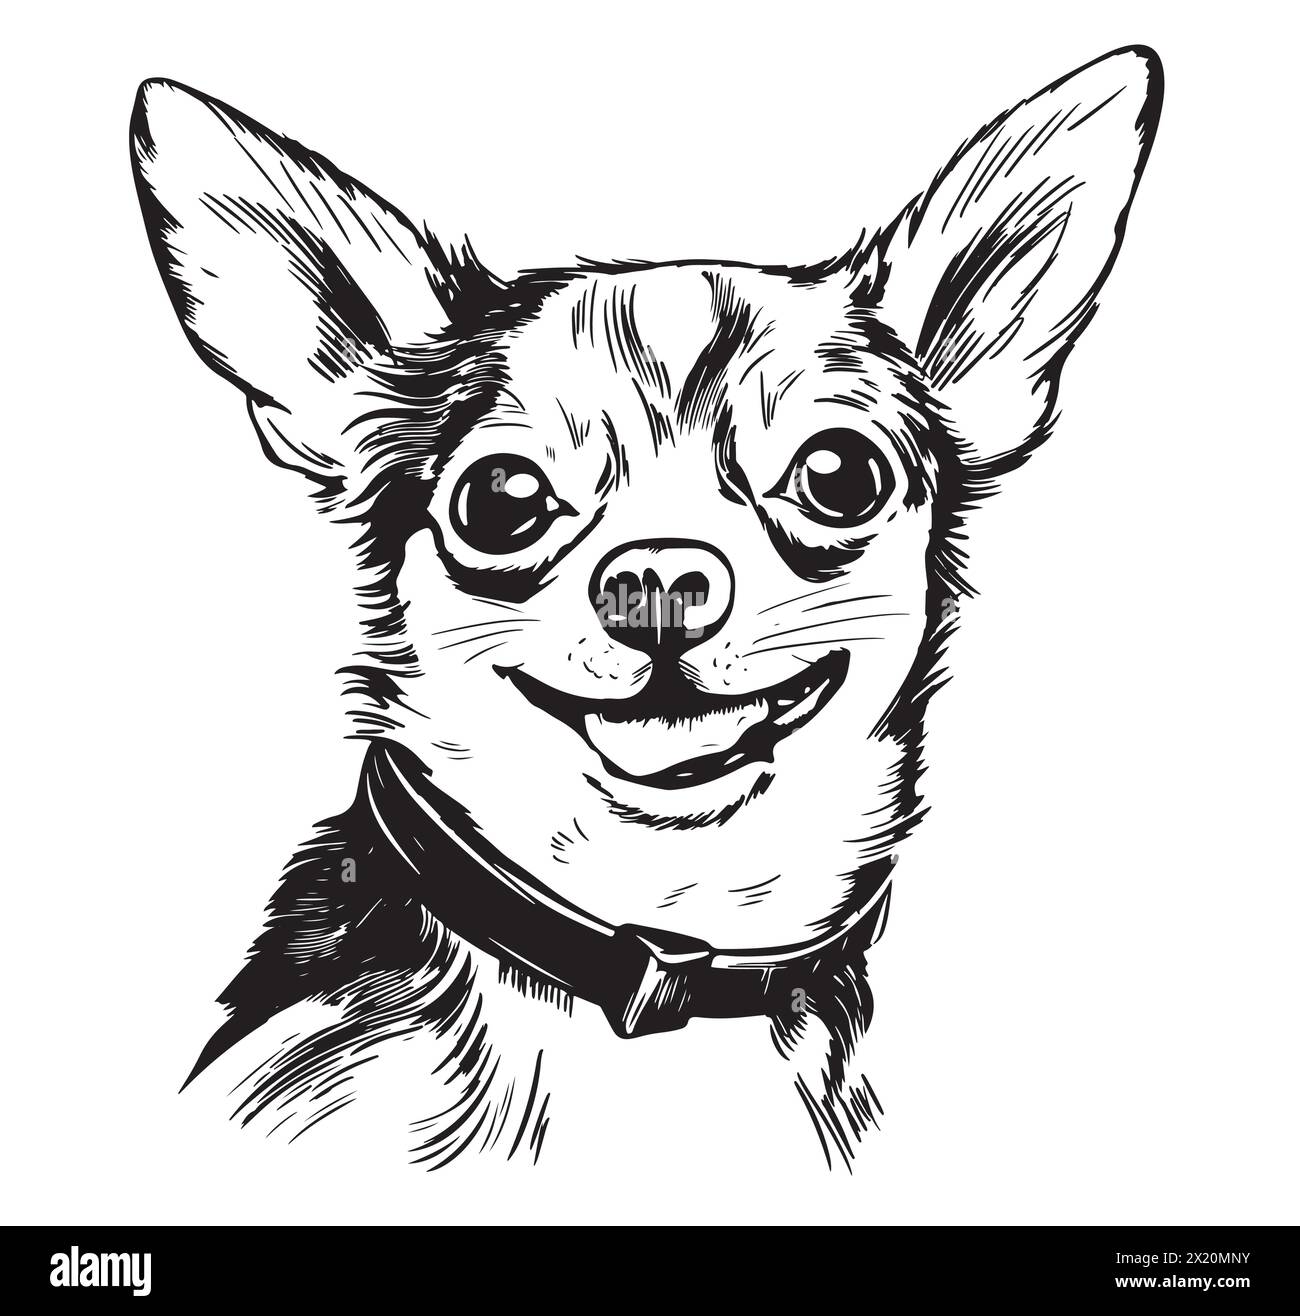 Ein lächelnder chihuahua, eine kleine Hunderasse, dargestellt in einer schwarz-weißen Zeichnung. Dieses fleischfressende, arbeitende Tier hat Barthaare und eine süße Schnauze. Ein Begleithund, wunderschön in einer kunstvollen Schriftart festgehalten Stock Vektor